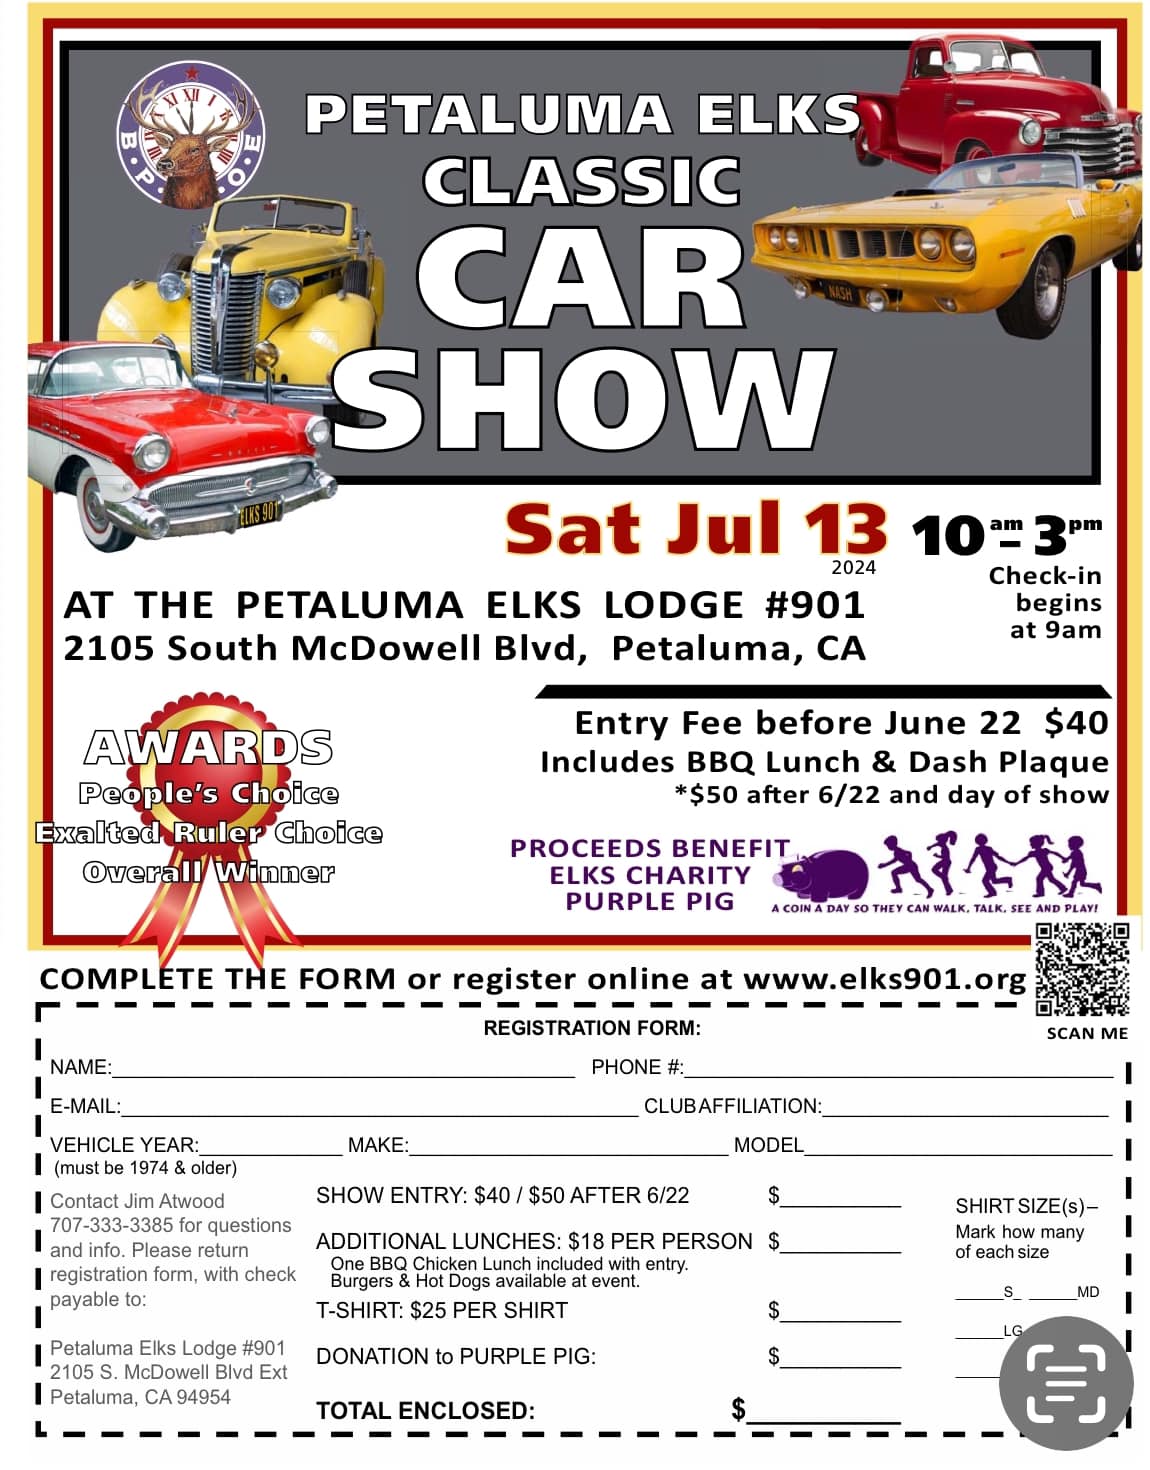 Petaluma Elks Classic Car Show